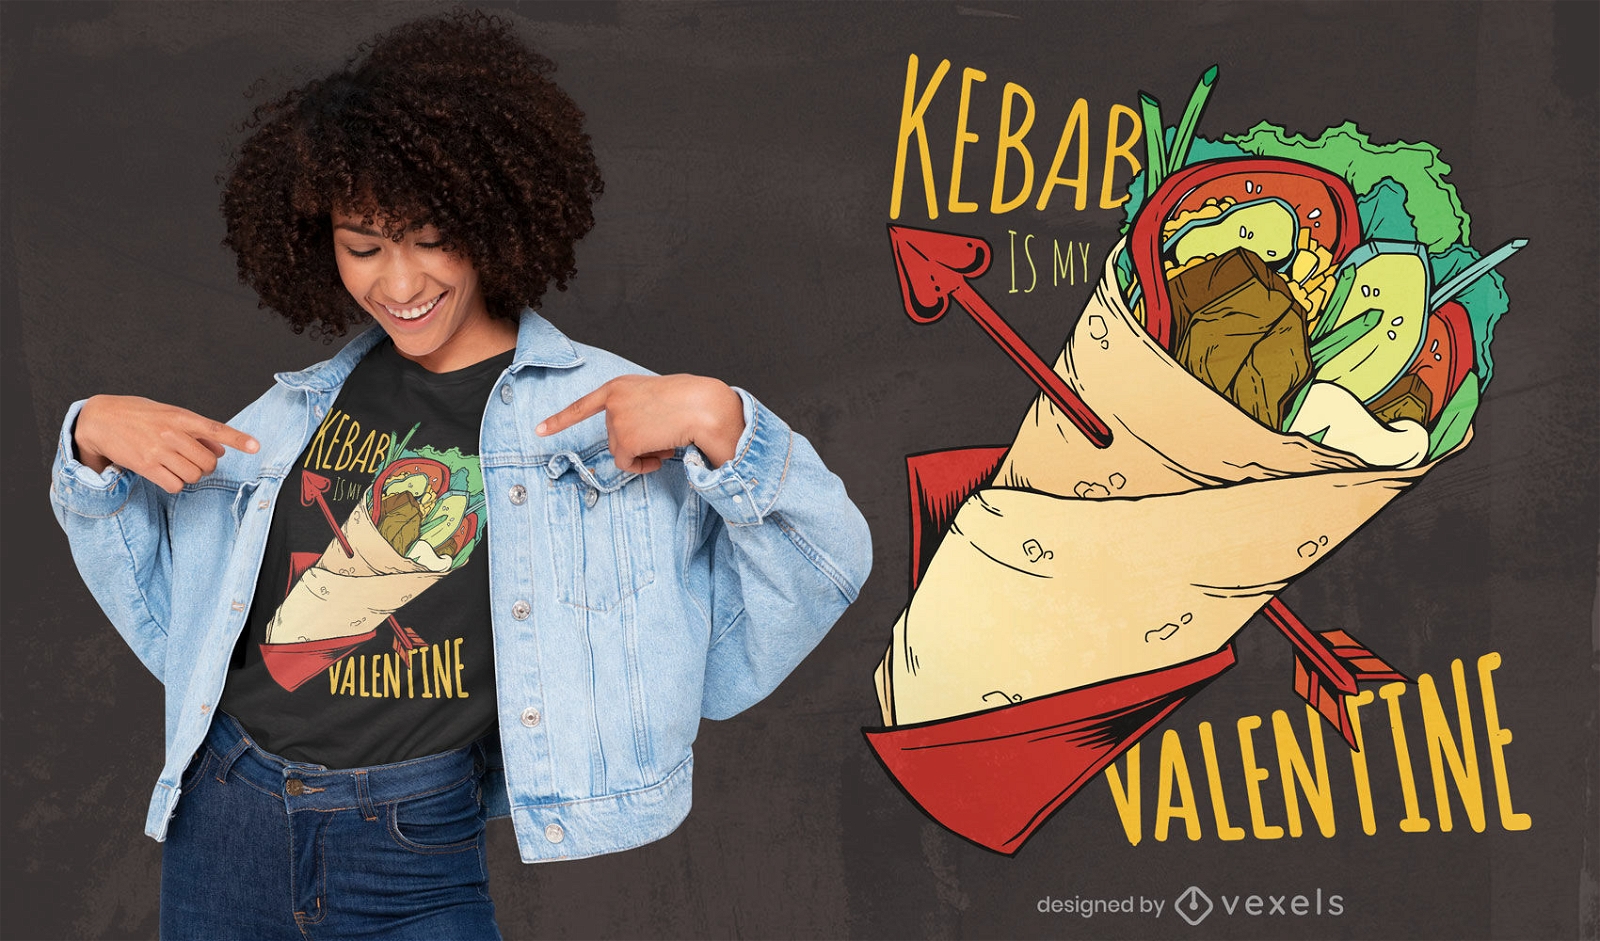 Kebab is my Valentine t-shirt design